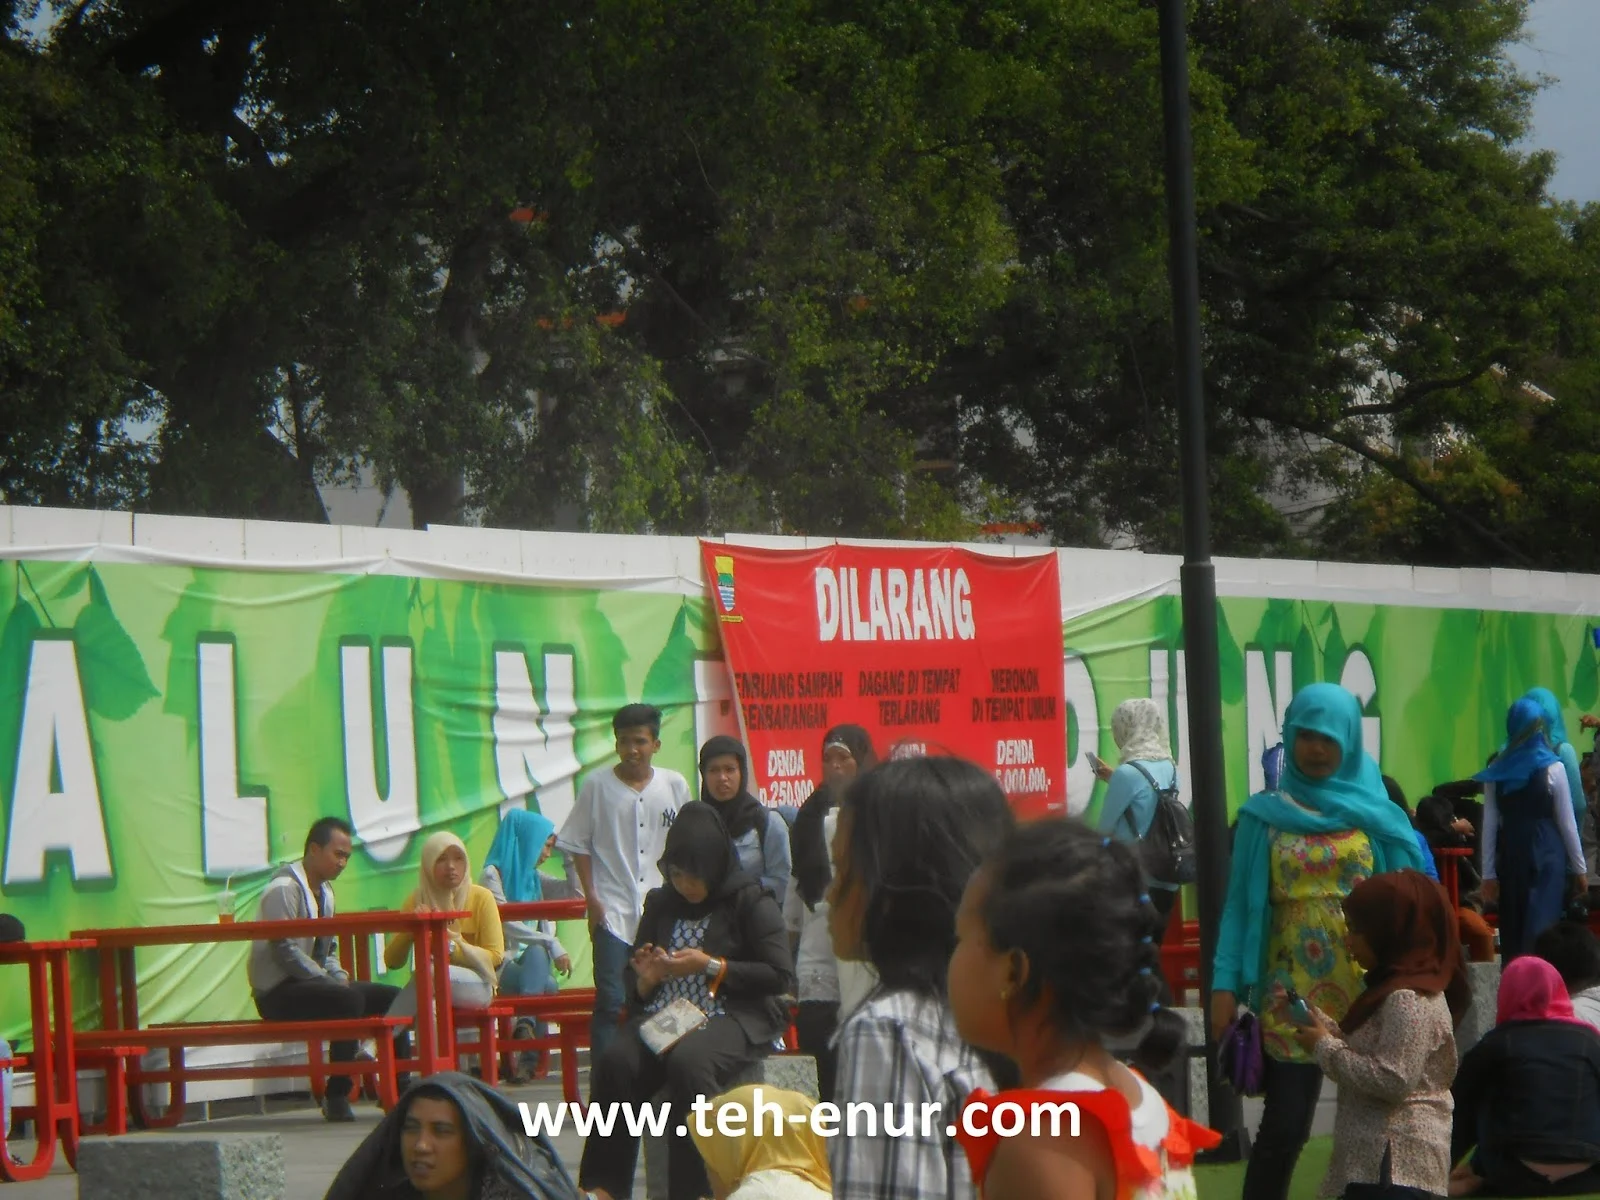 Kumpulan foto-foto Alun-alun kota Bandung - Meja dan kursi merah di sebelah timur